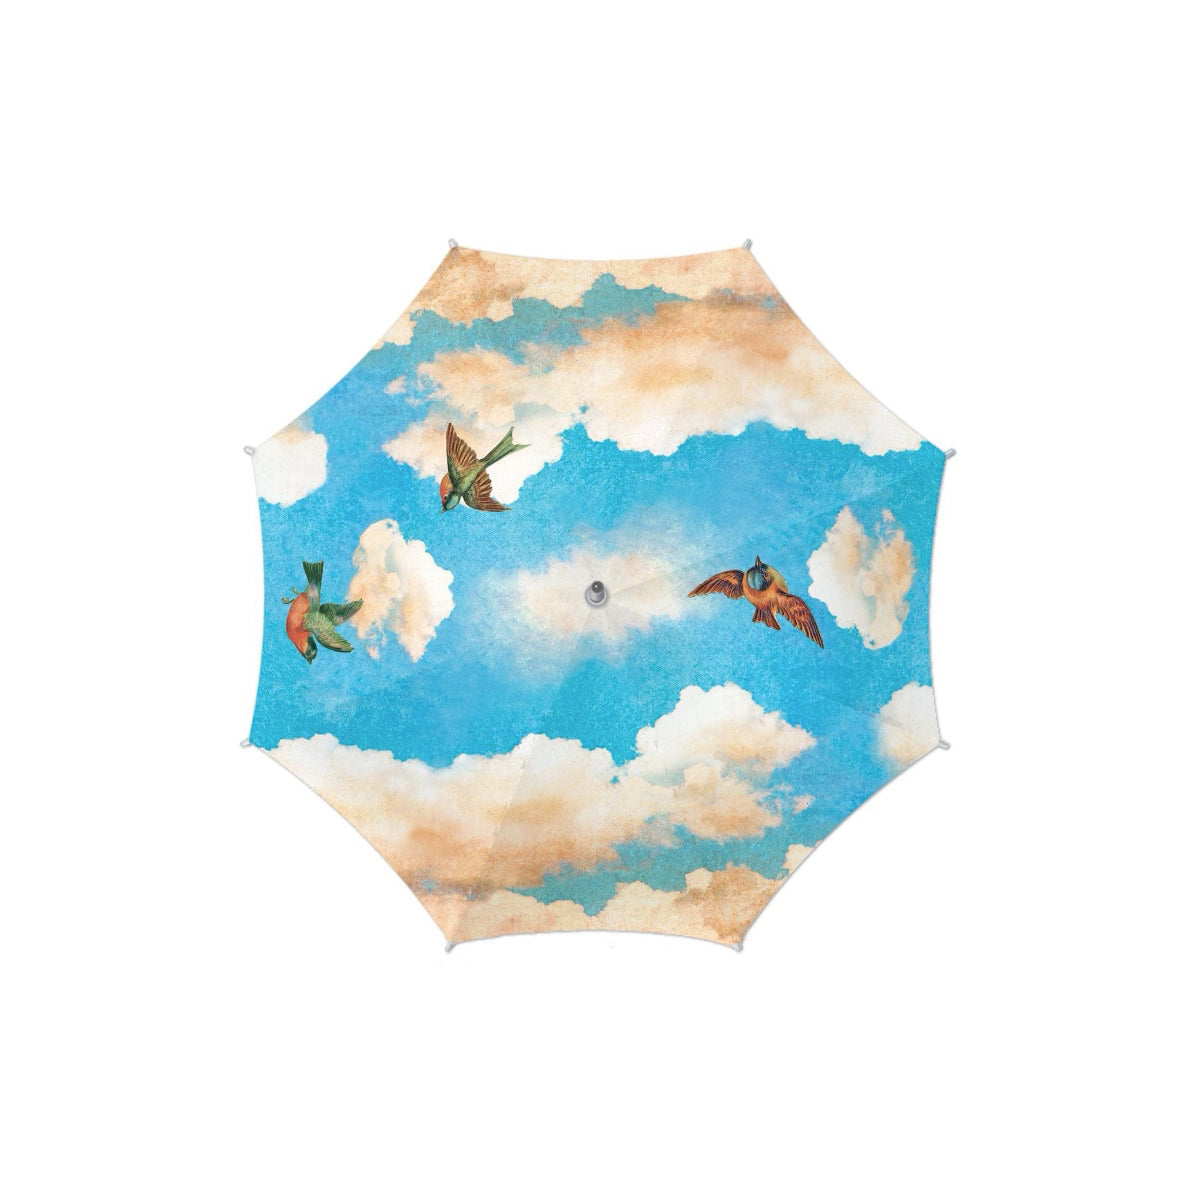 Michel Design- Cloud Nine Umbrella